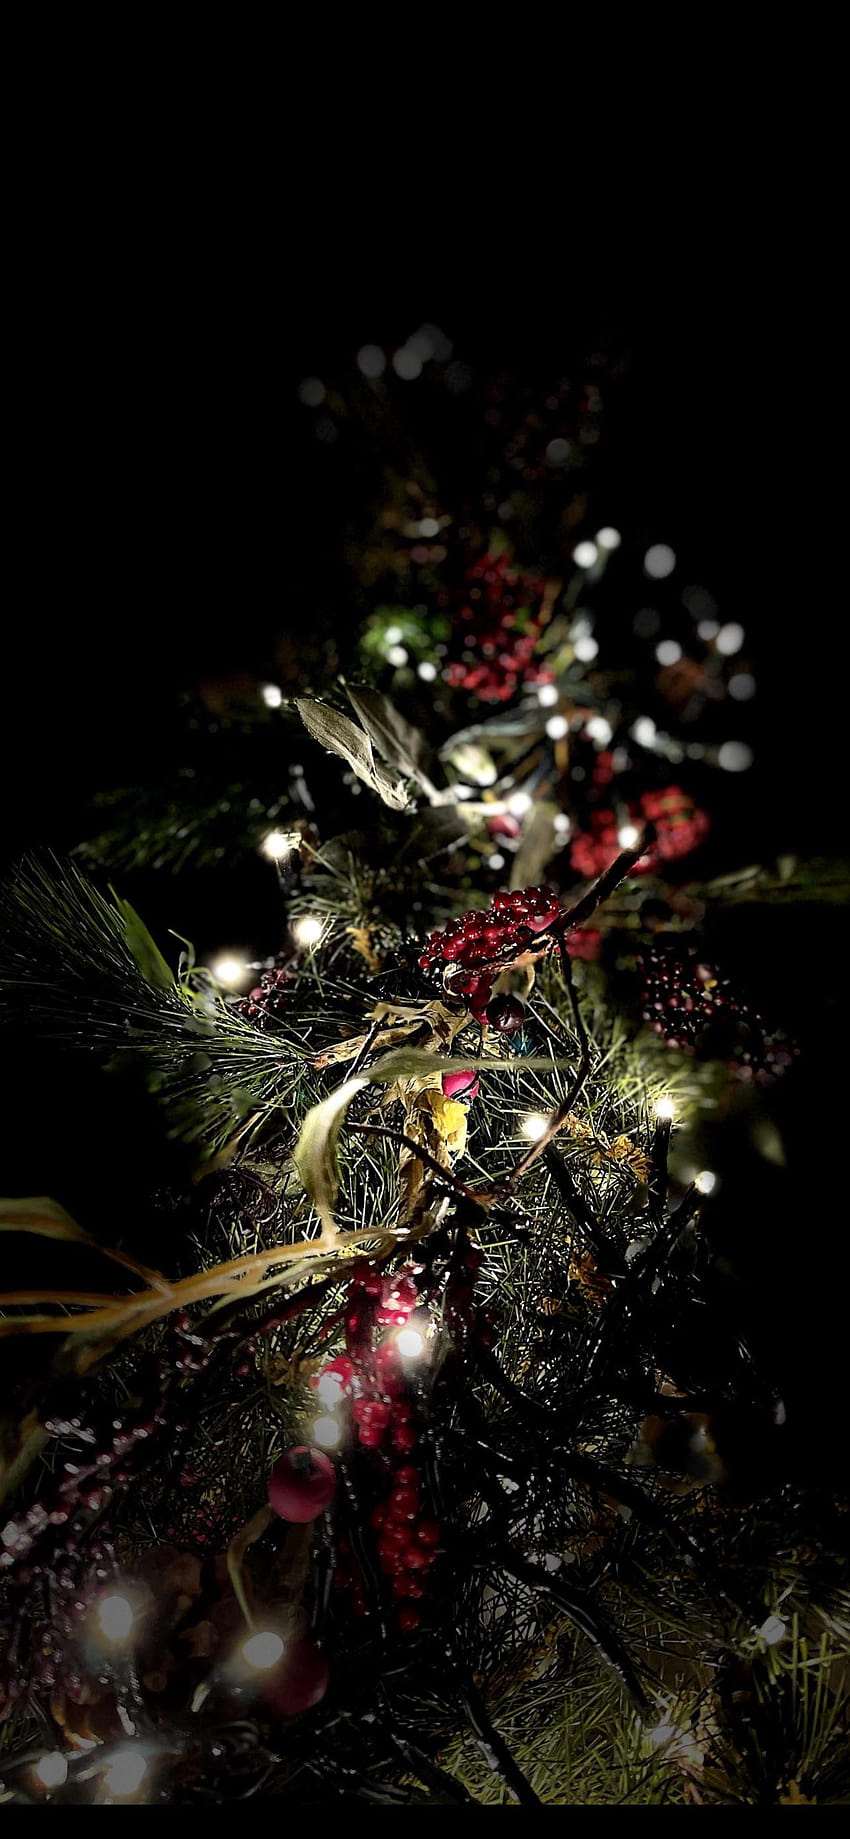 Đèn Noel iPhone: Đón Giáng sinh với đèn Noel đầy ấn tượng trên iPhone. Những bức ảnh đầy màu sắc sẽ mang đến niềm vui và hạnh phúc cho ngày lễ của bạn.